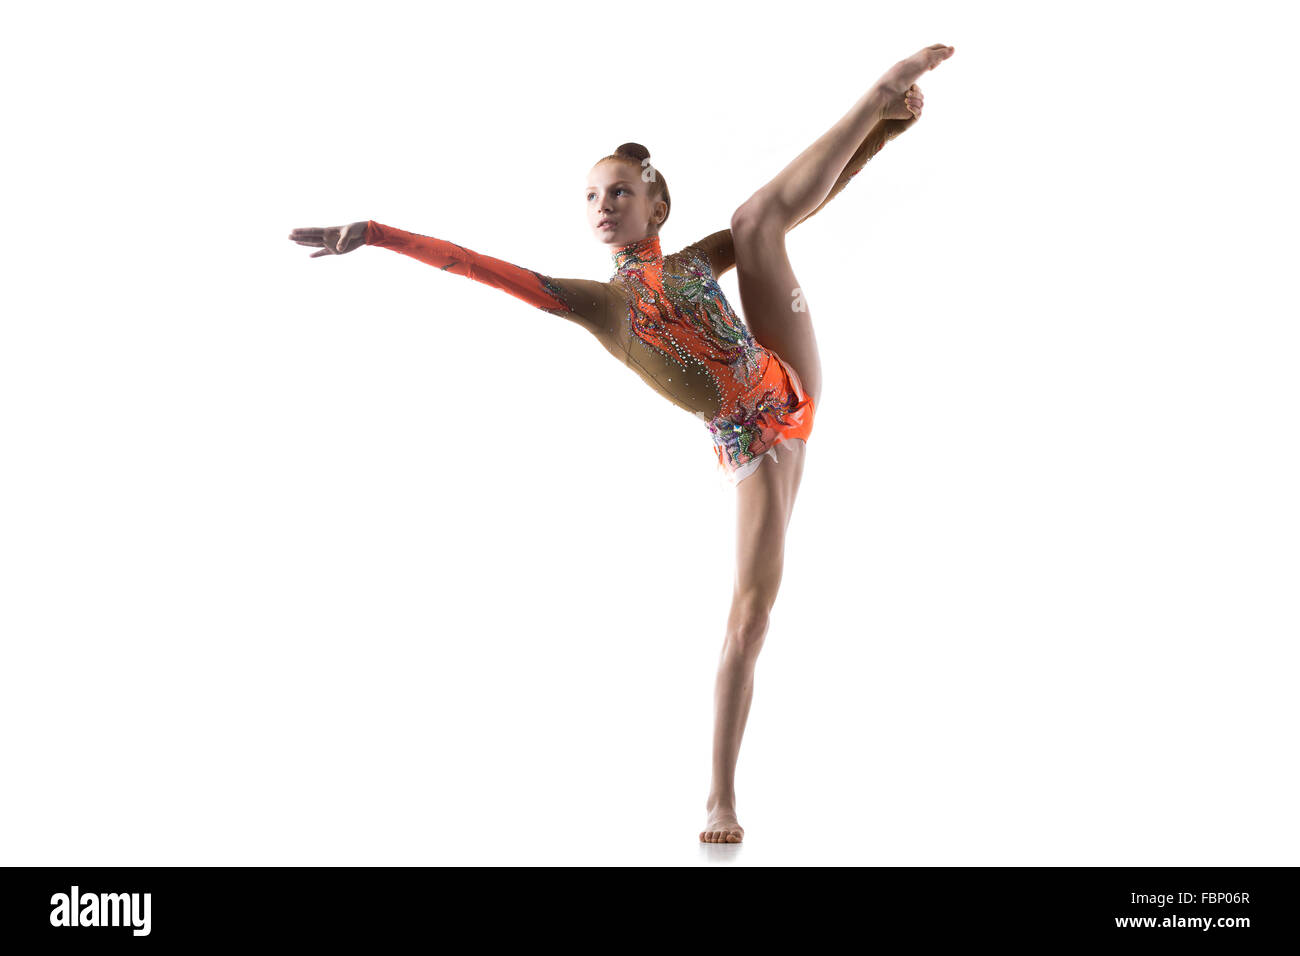 Bella atleta ginnasta ragazza adolescente che indossa la ballerina colorata leotard lavorando fuori, dancing, ponendo, facendo ginnastica in equilibrio Foto Stock